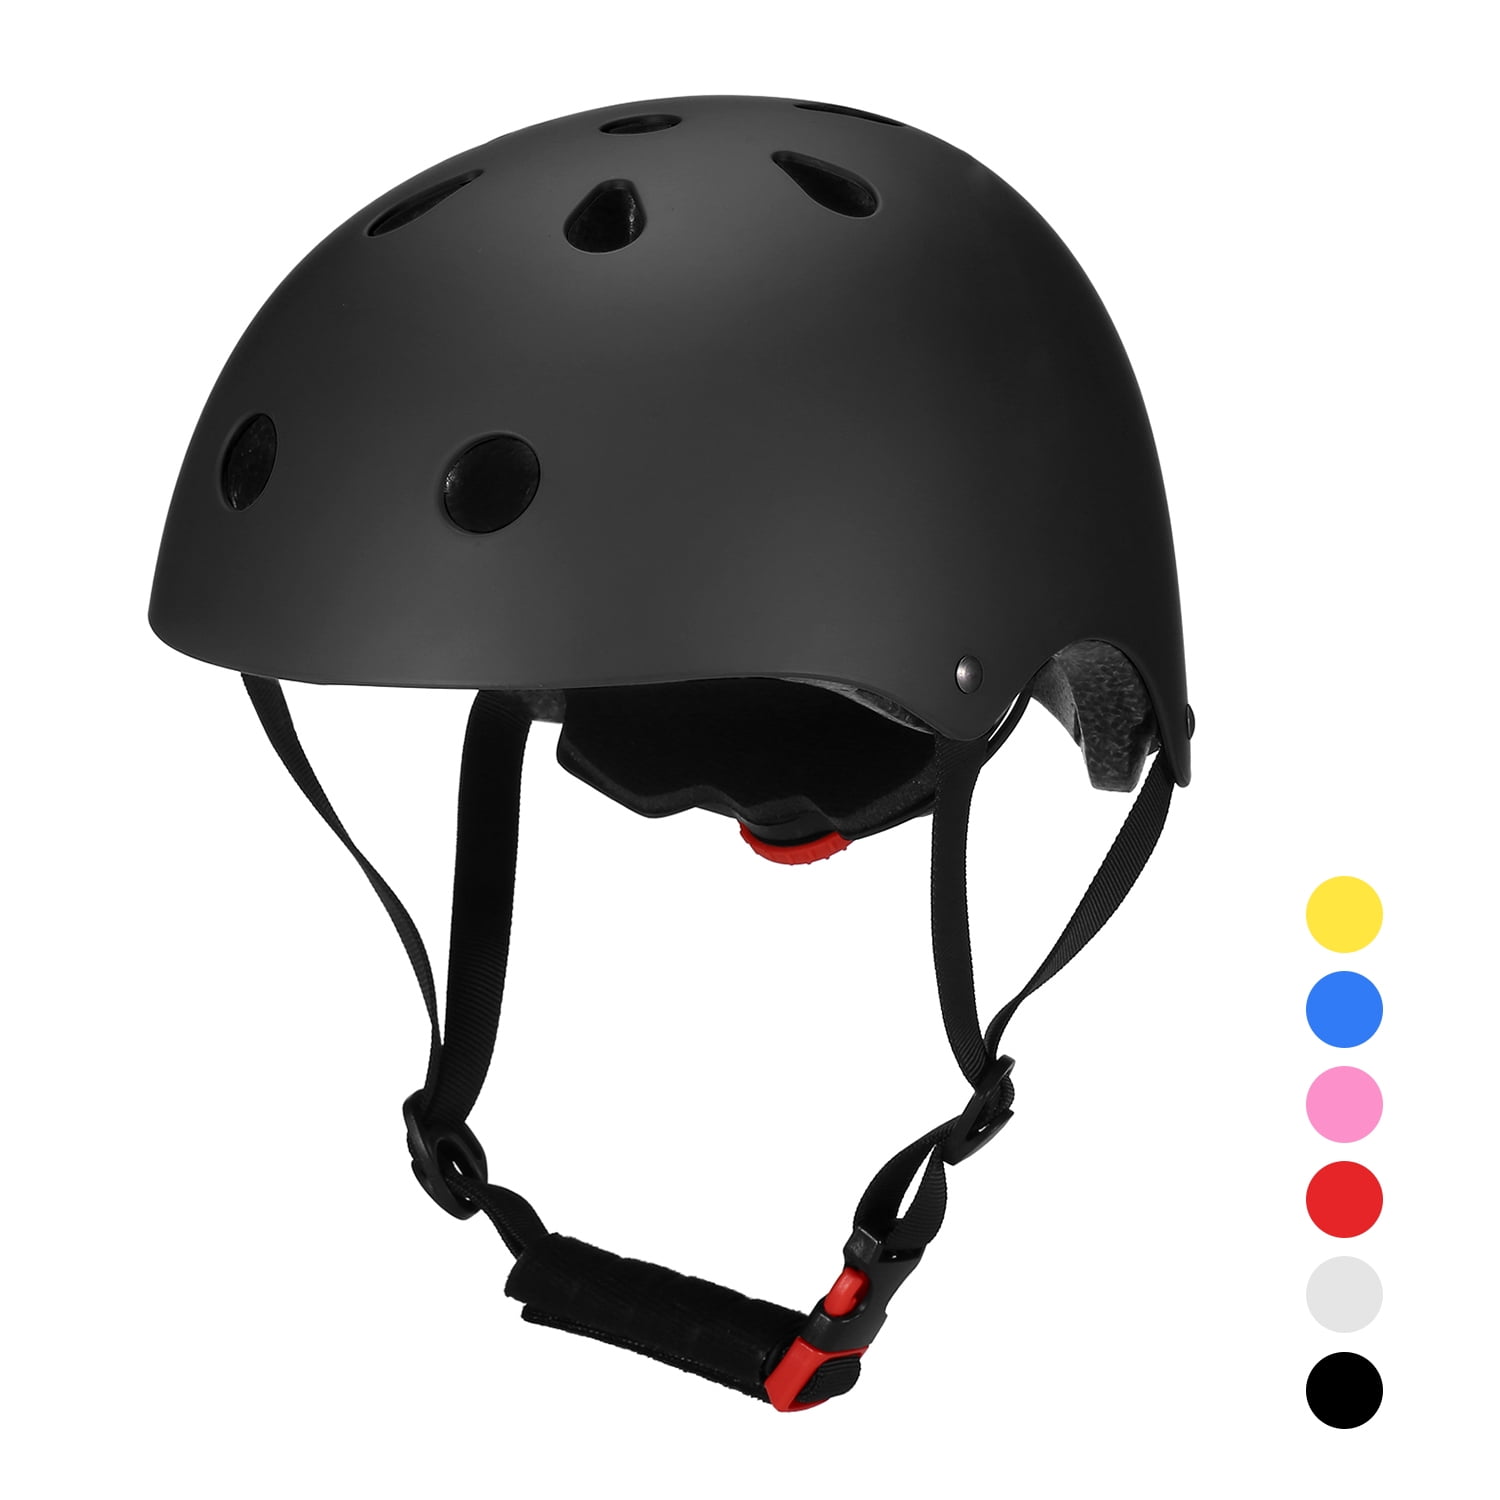 Bicycle Helmet Multi-Sports Safety Helmet for Kids/Teenagers